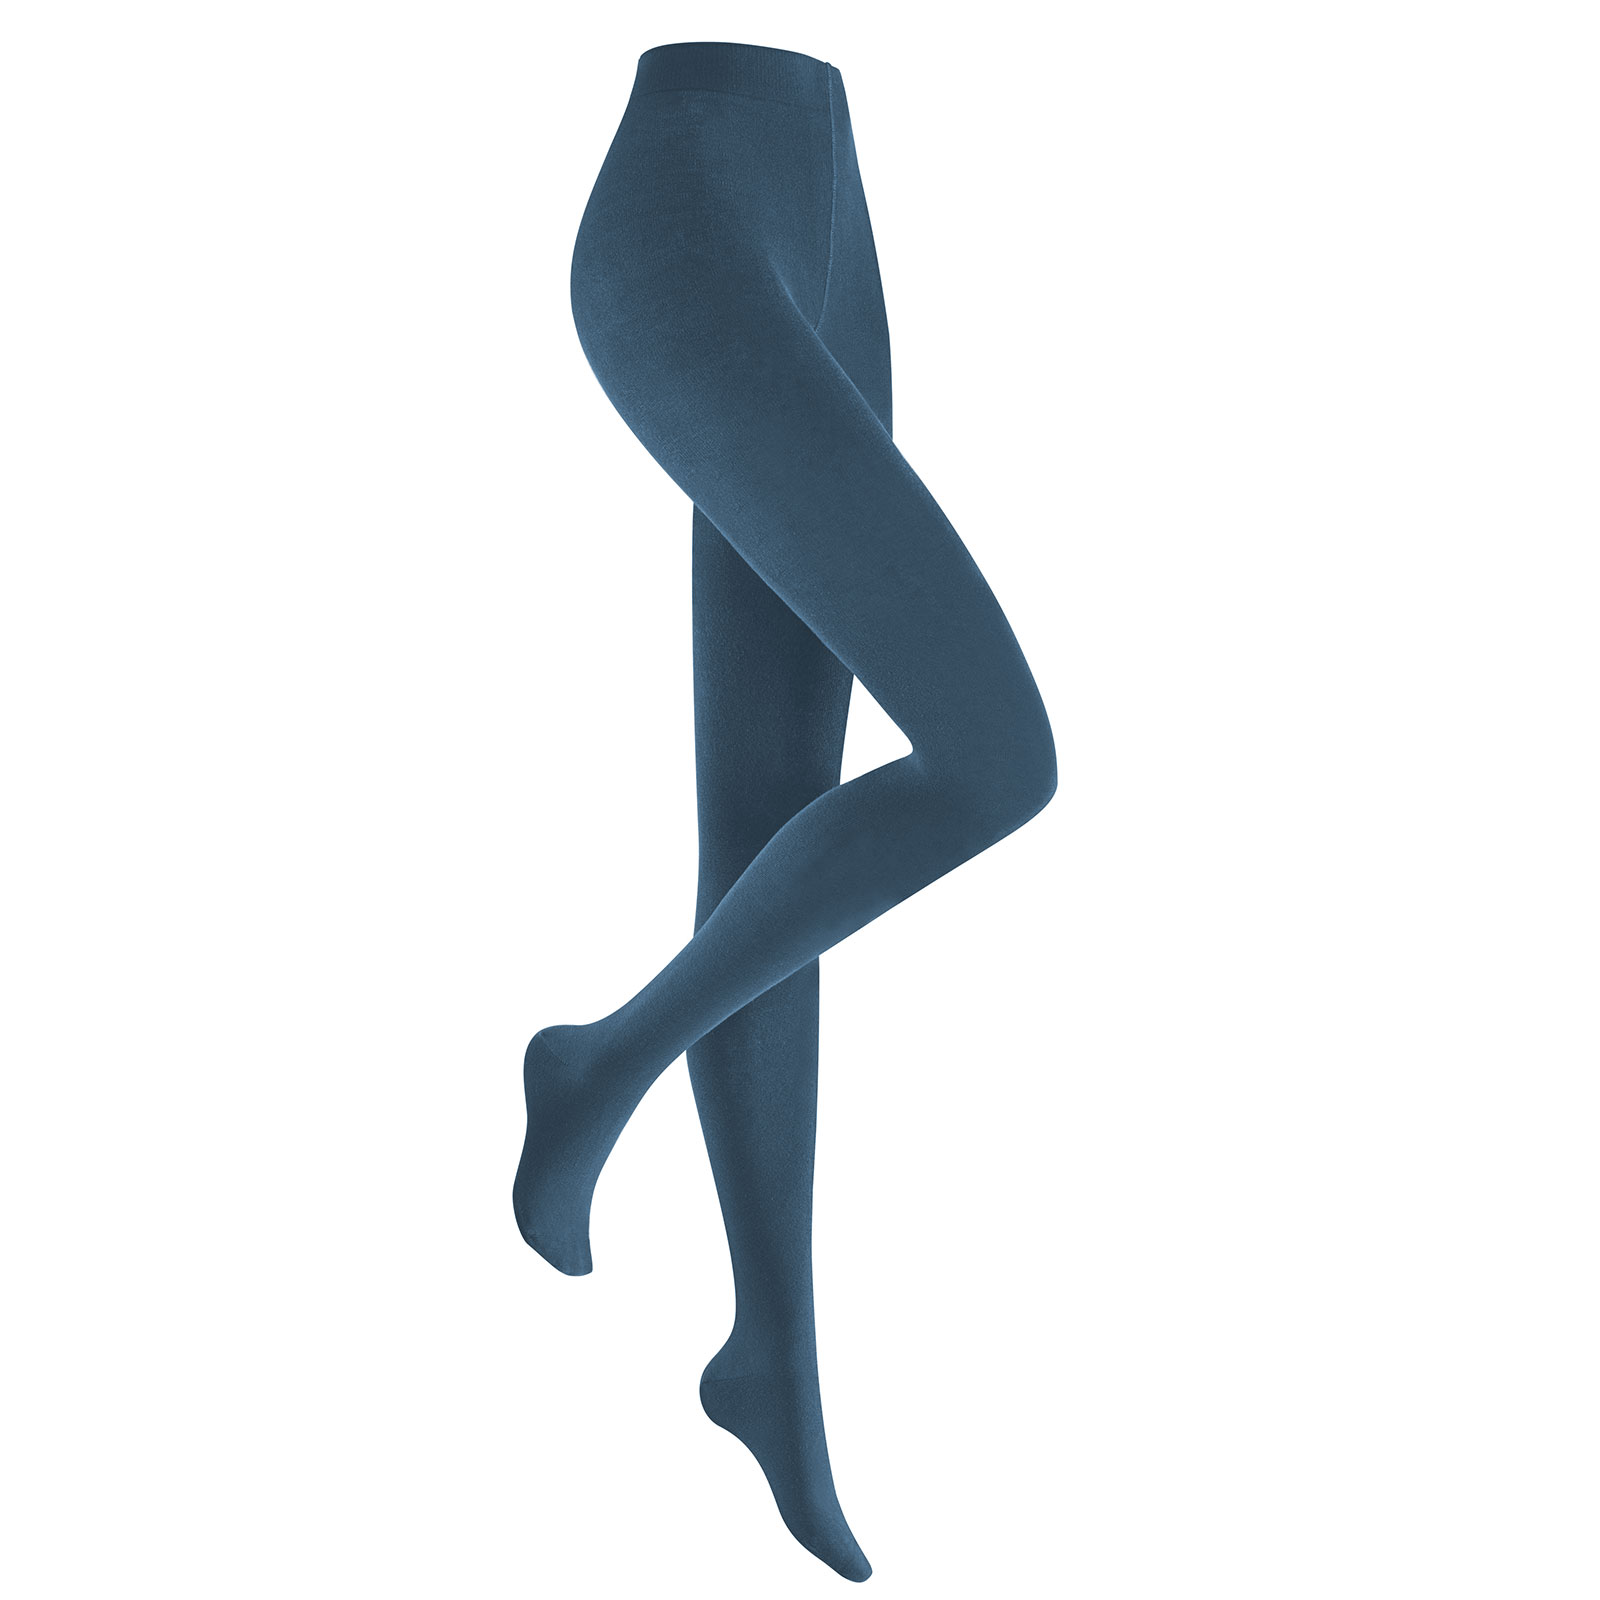 HUDSON Damen RELAX FINE  -  44/46 - Blickdichte Strumpfhose / Strickstrumpfhose mit hohem Baumwollanteil - Blue moon (Blau)